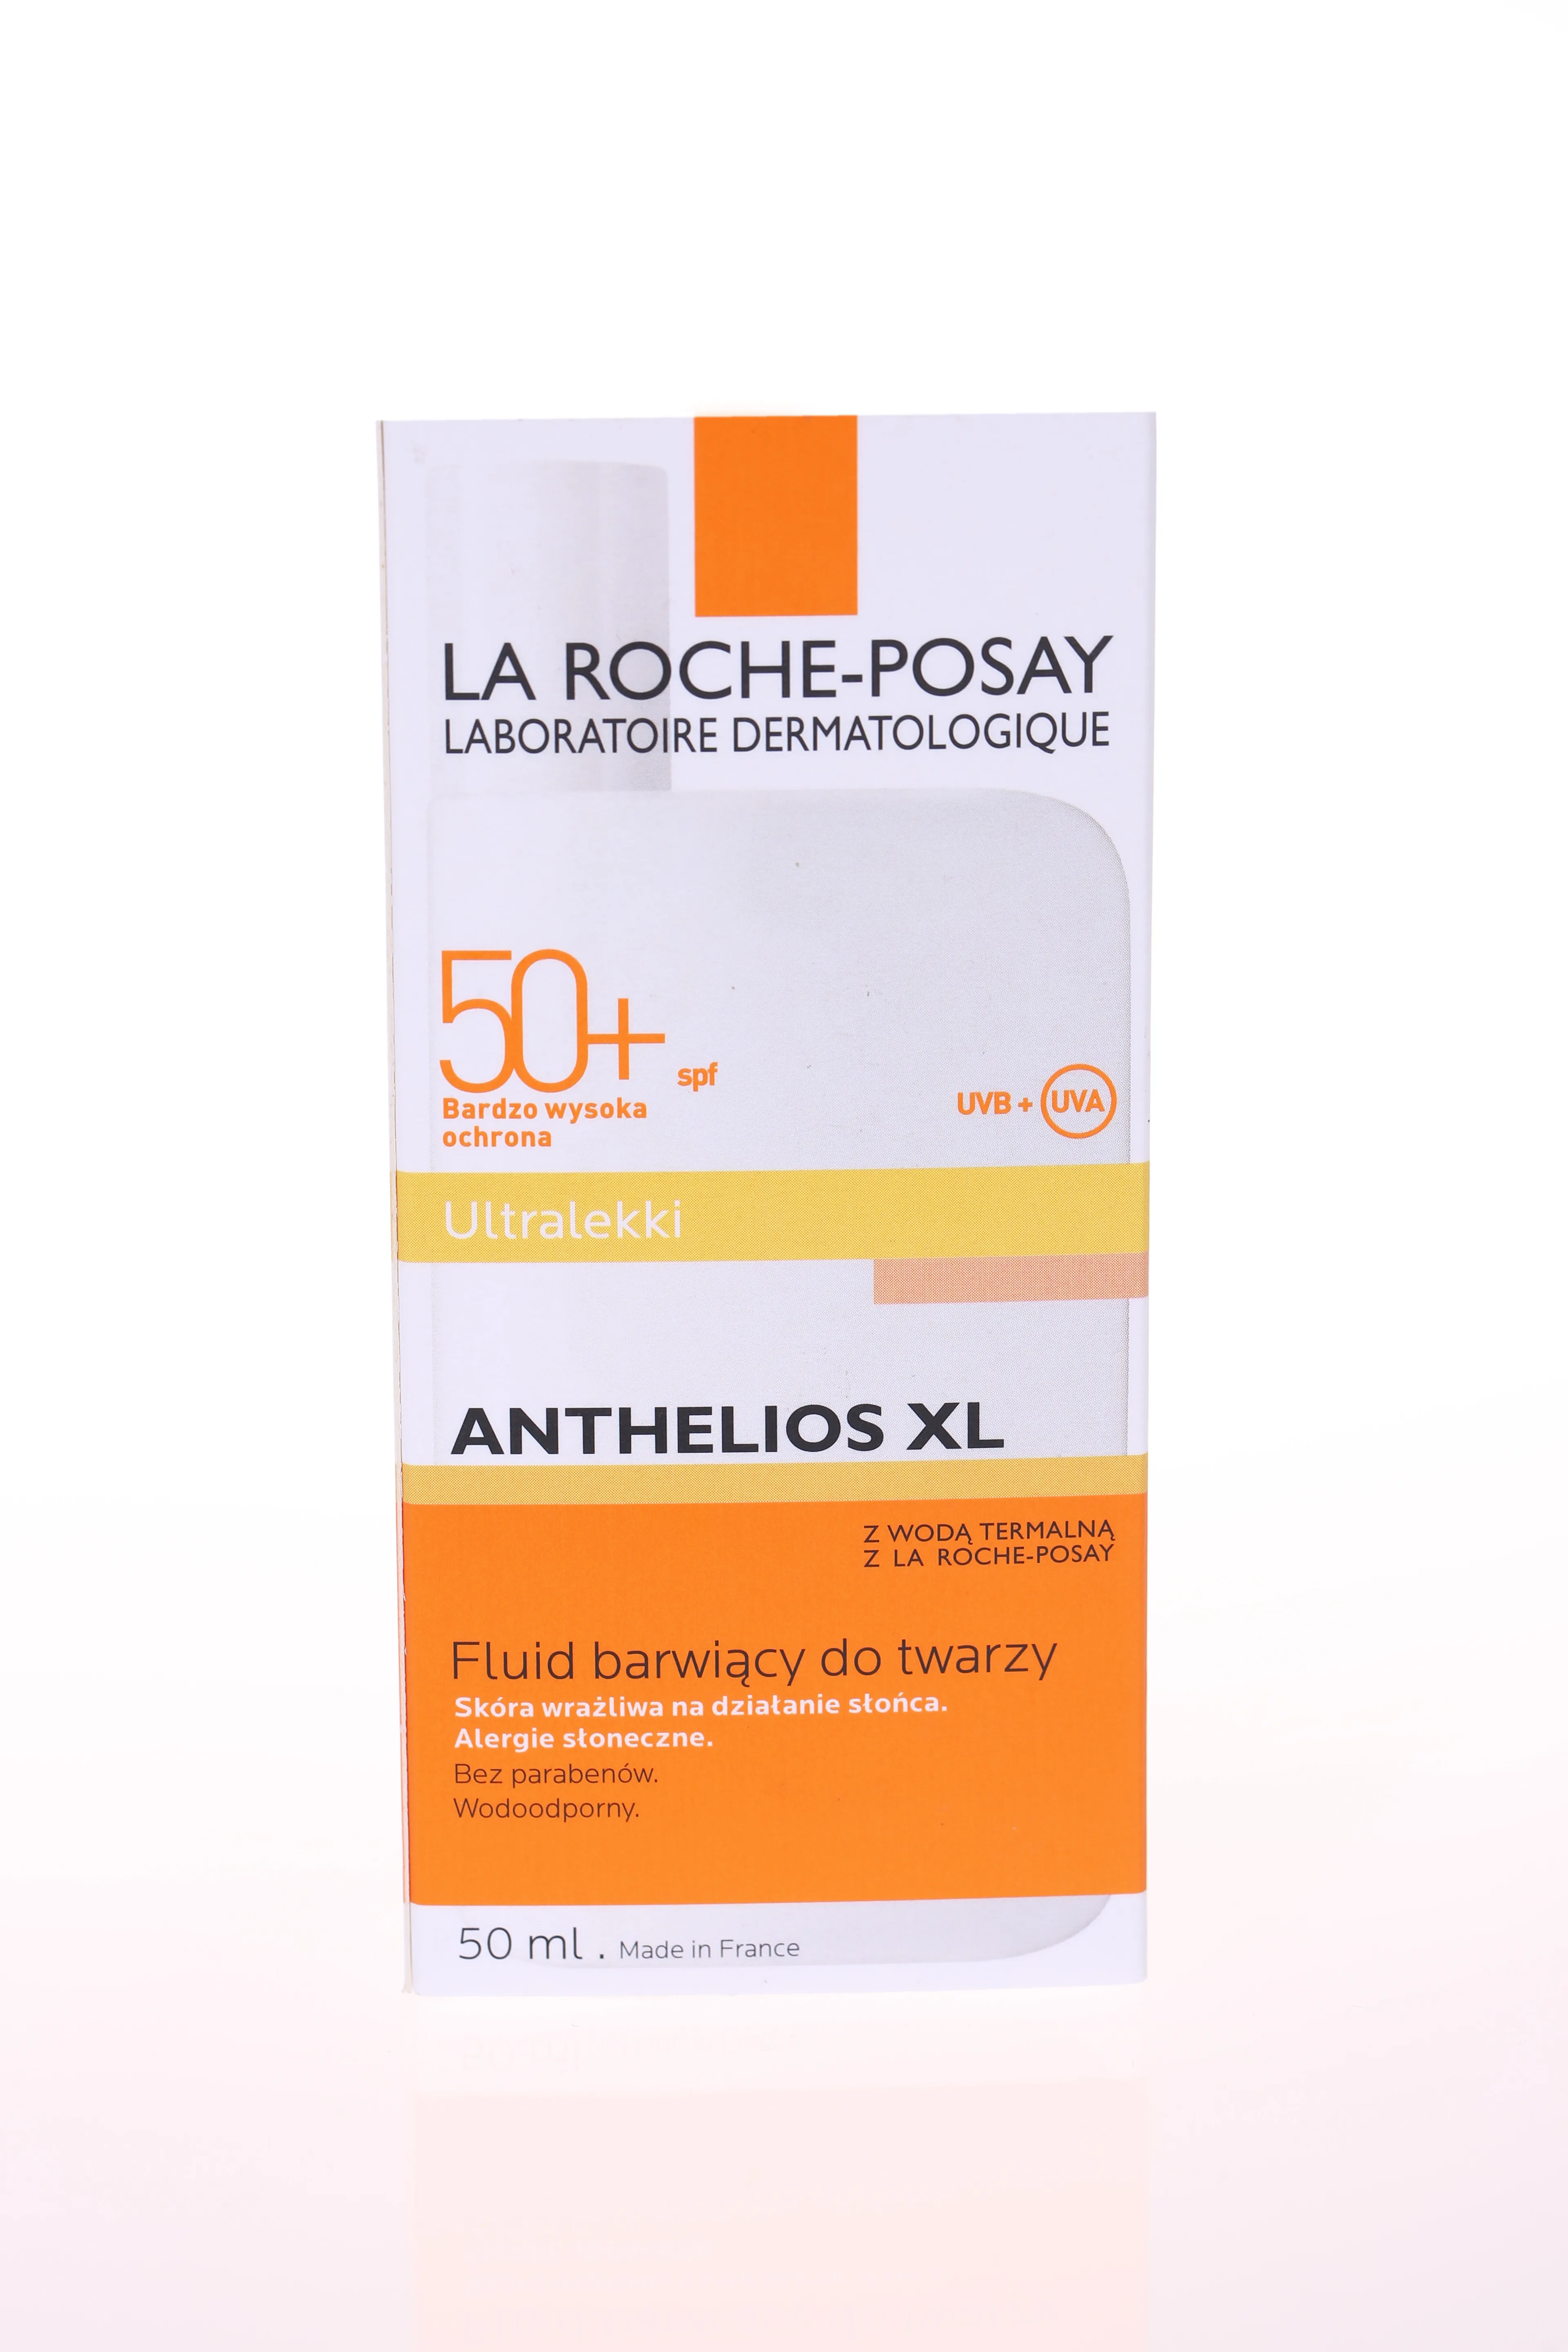 La Roche-Posay Anthelios XL, fluid barwiący do twarzy SPF 50+, 50 ml